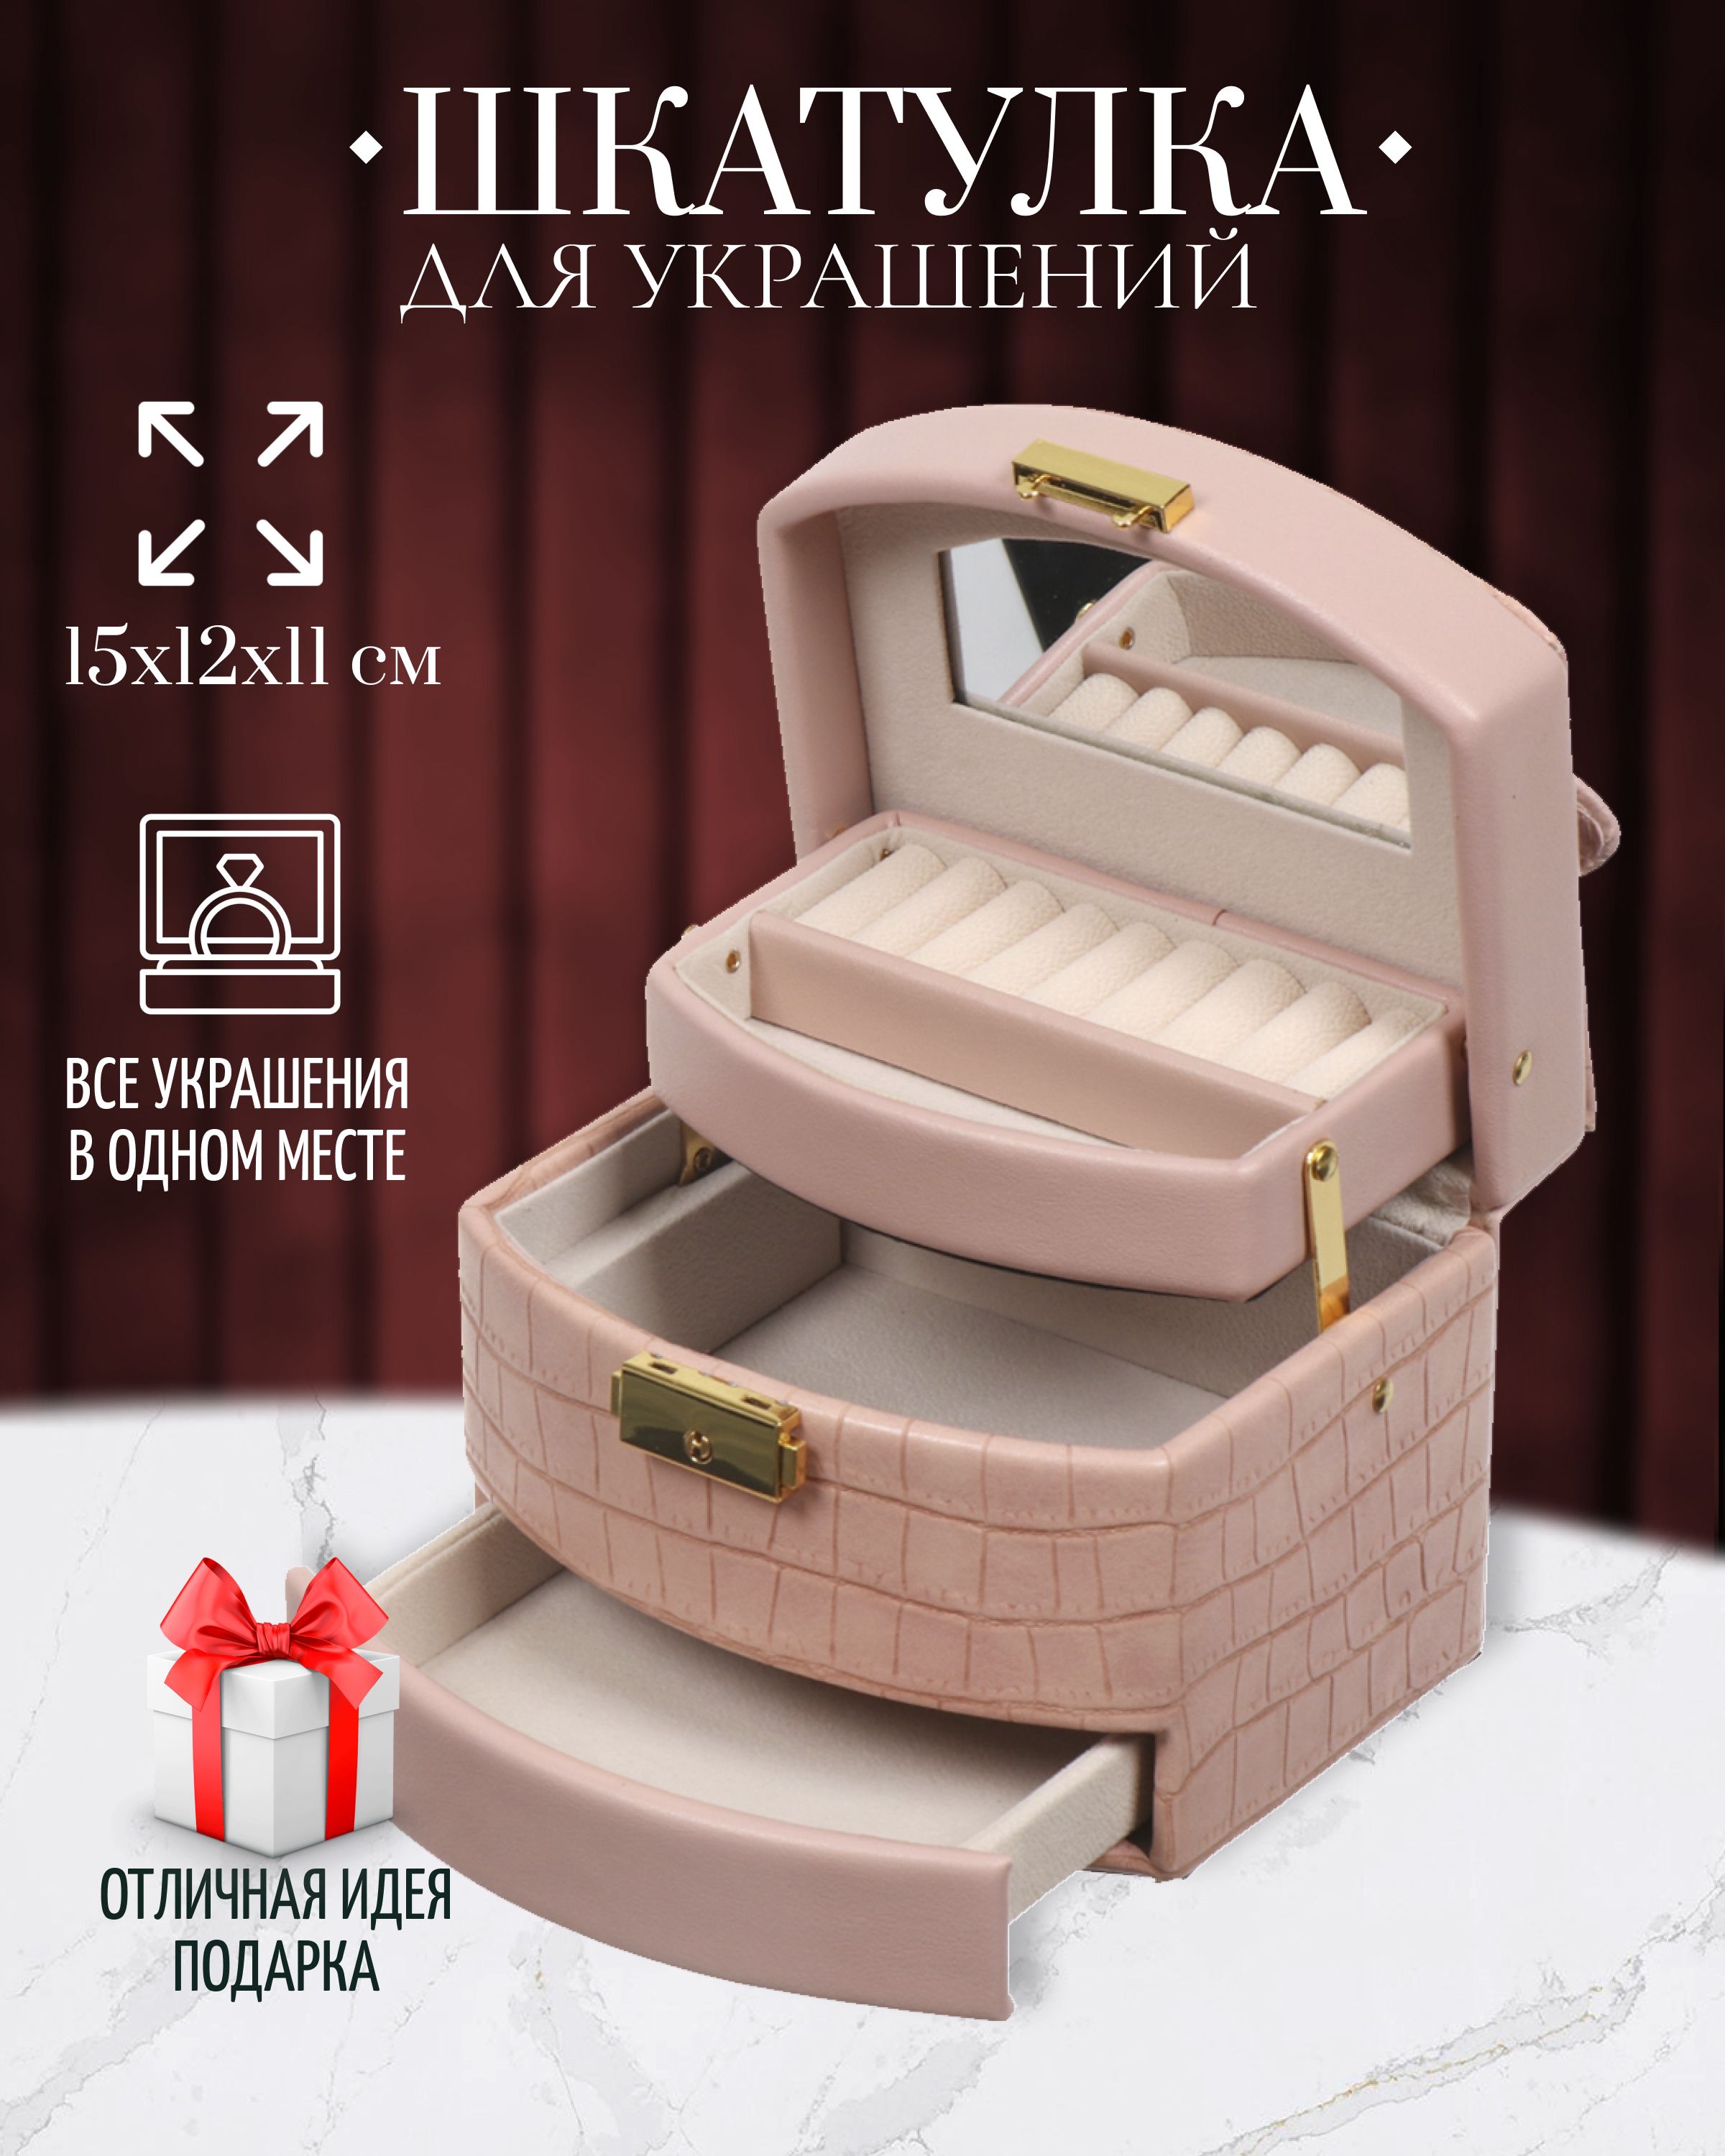 Восточные подарки: Шкатулки купить в интернет-магазине эксклюзивных подарков LuxPodarki в Москве